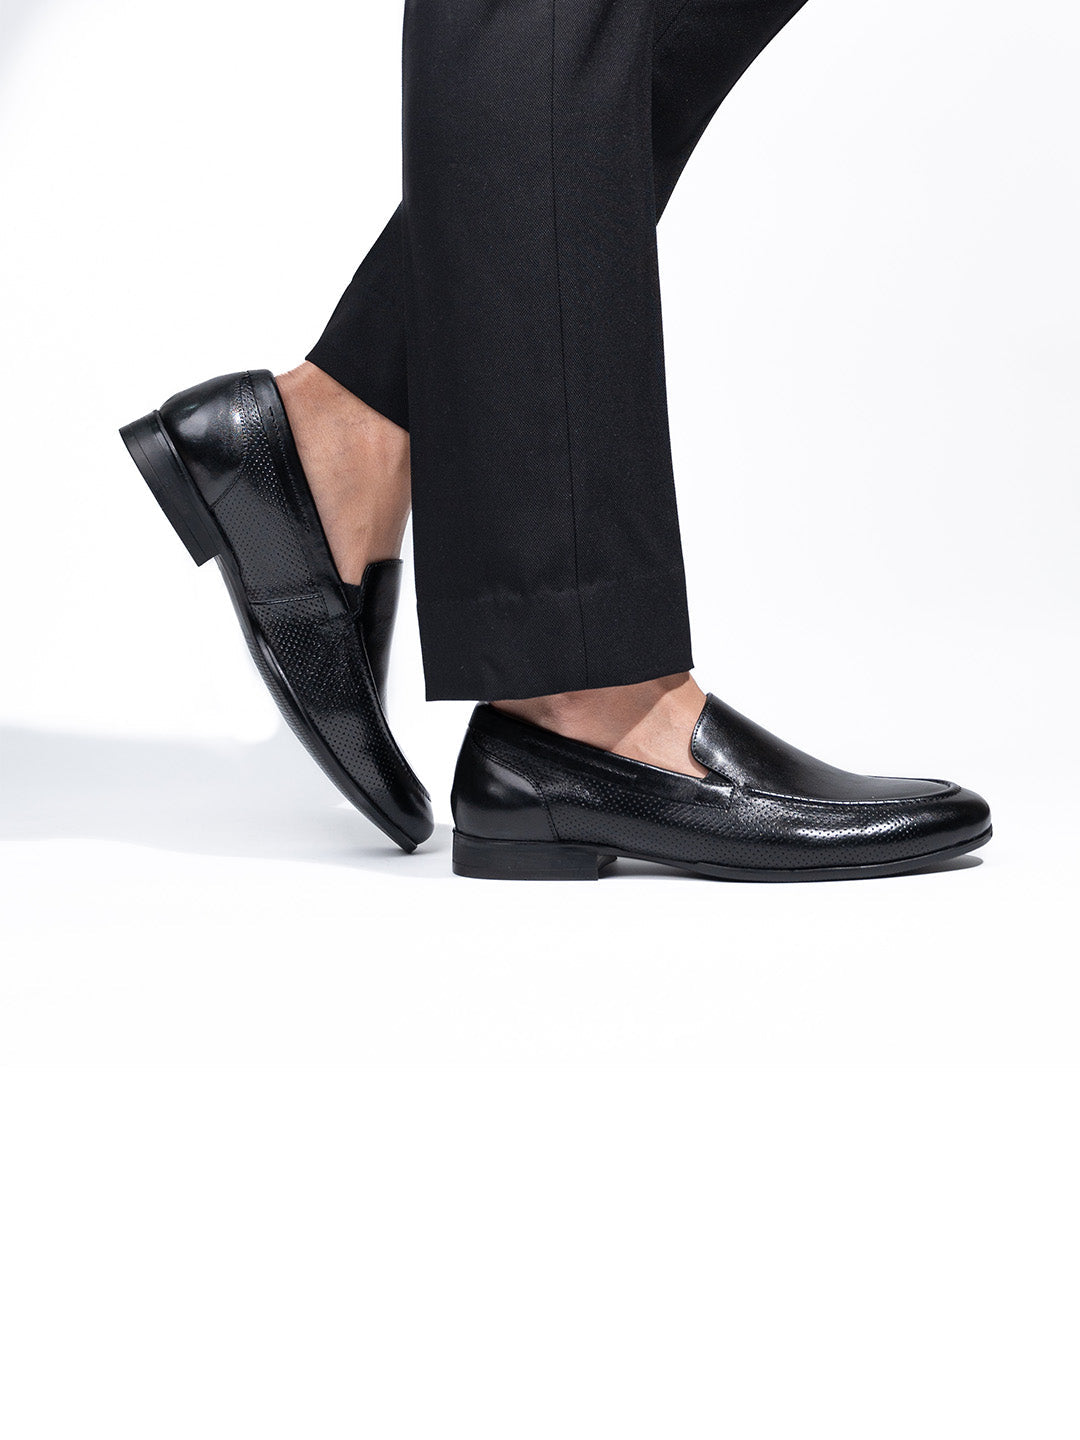 Men's Black Leather Hook & Loop Sandals